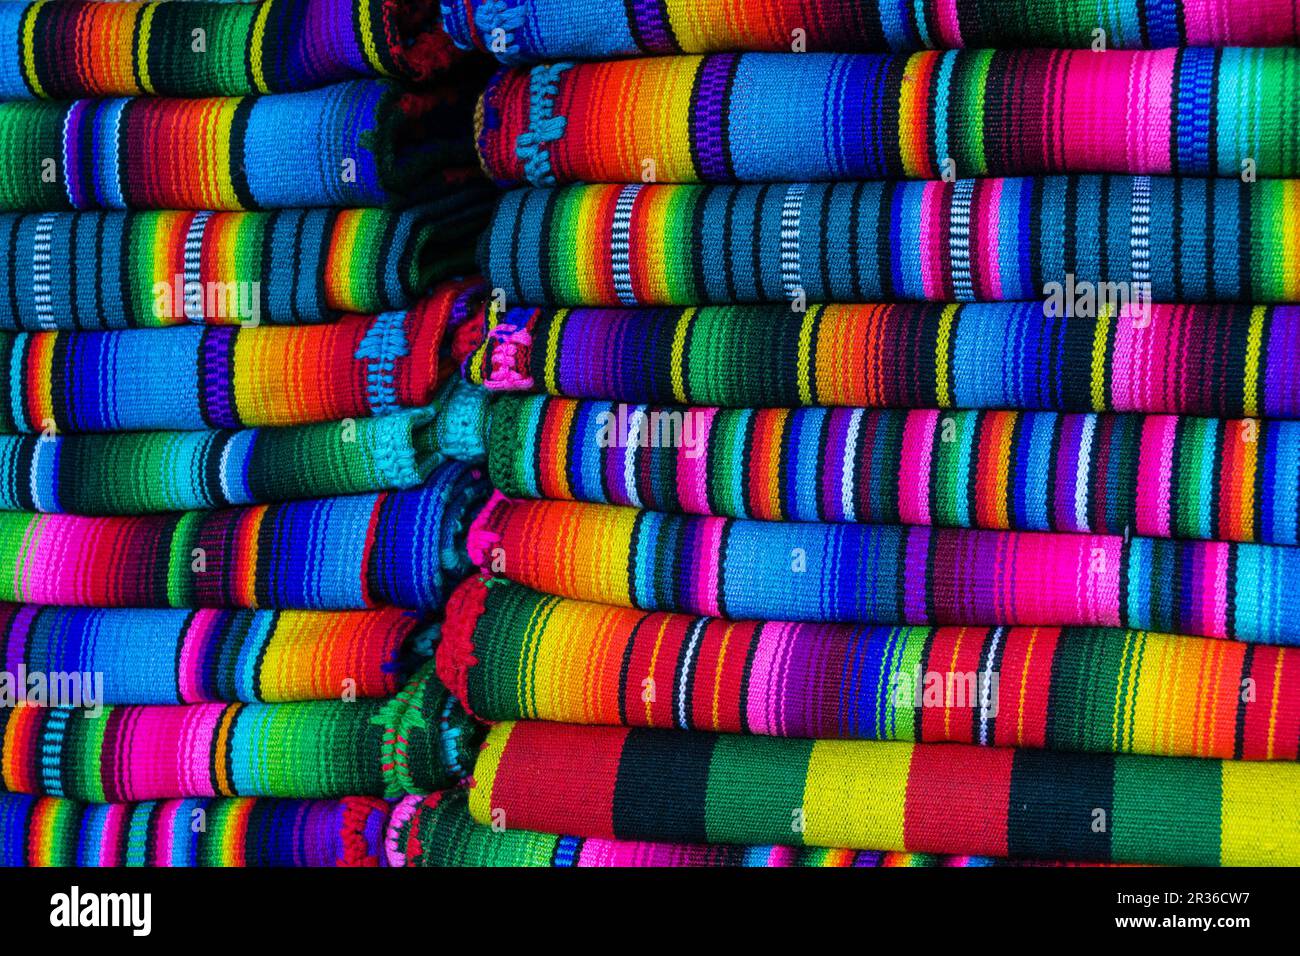 tejidos tipicos, Chichicastenango ,municipio del departamento de El Quiché, Guatemala, Central America. Stock Photo